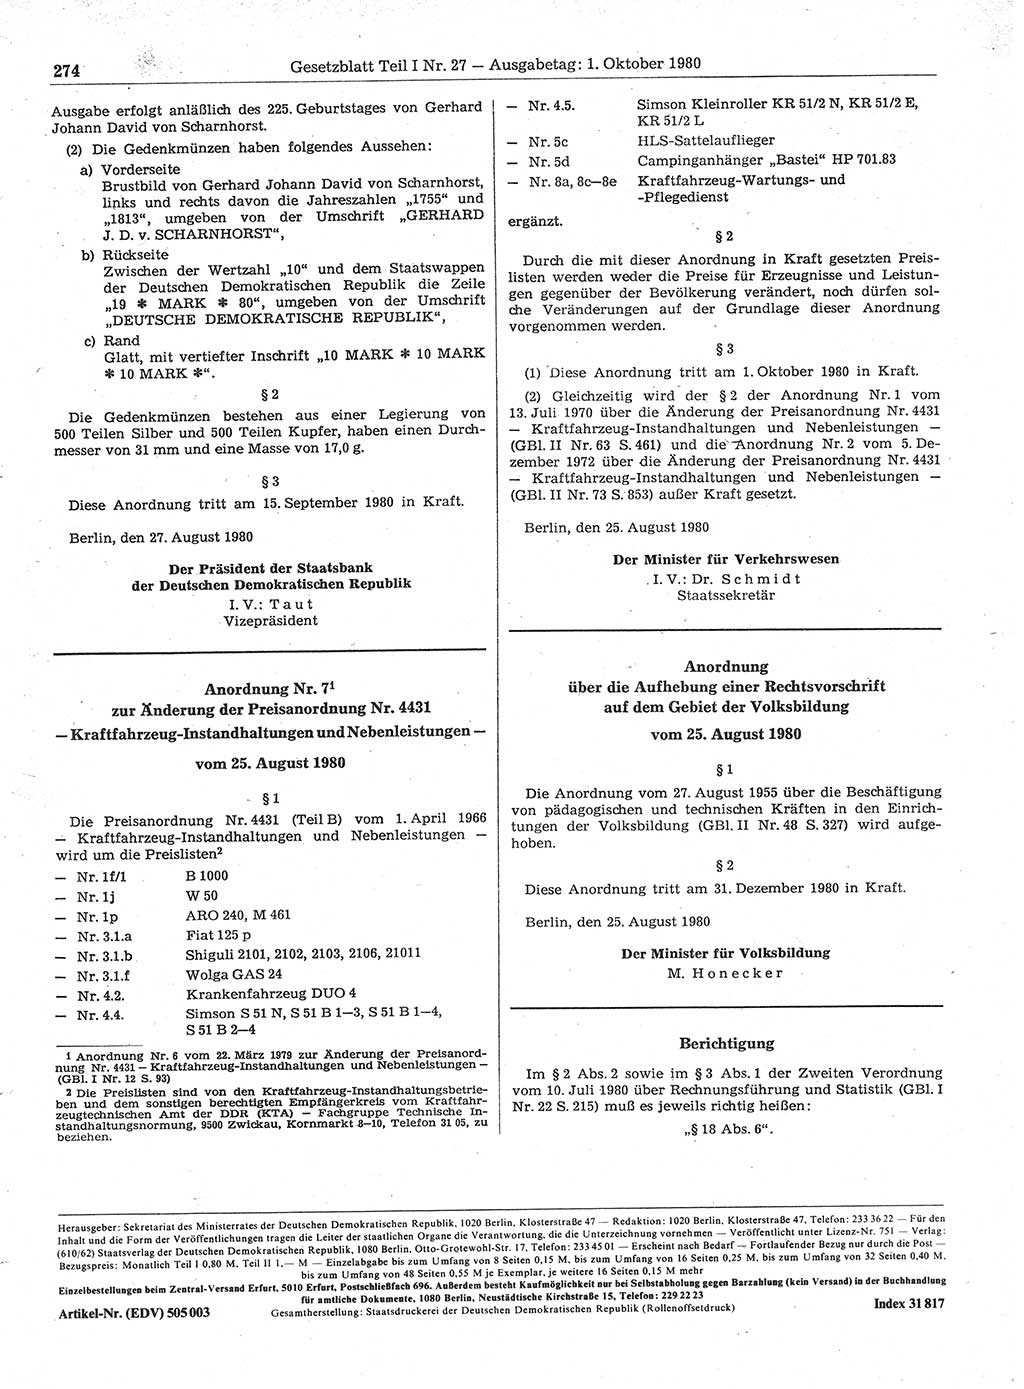 Gesetzblatt (GBl.) der Deutschen Demokratischen Republik (DDR) Teil Ⅰ 1980, Seite 274 (GBl. DDR Ⅰ 1980, S. 274)